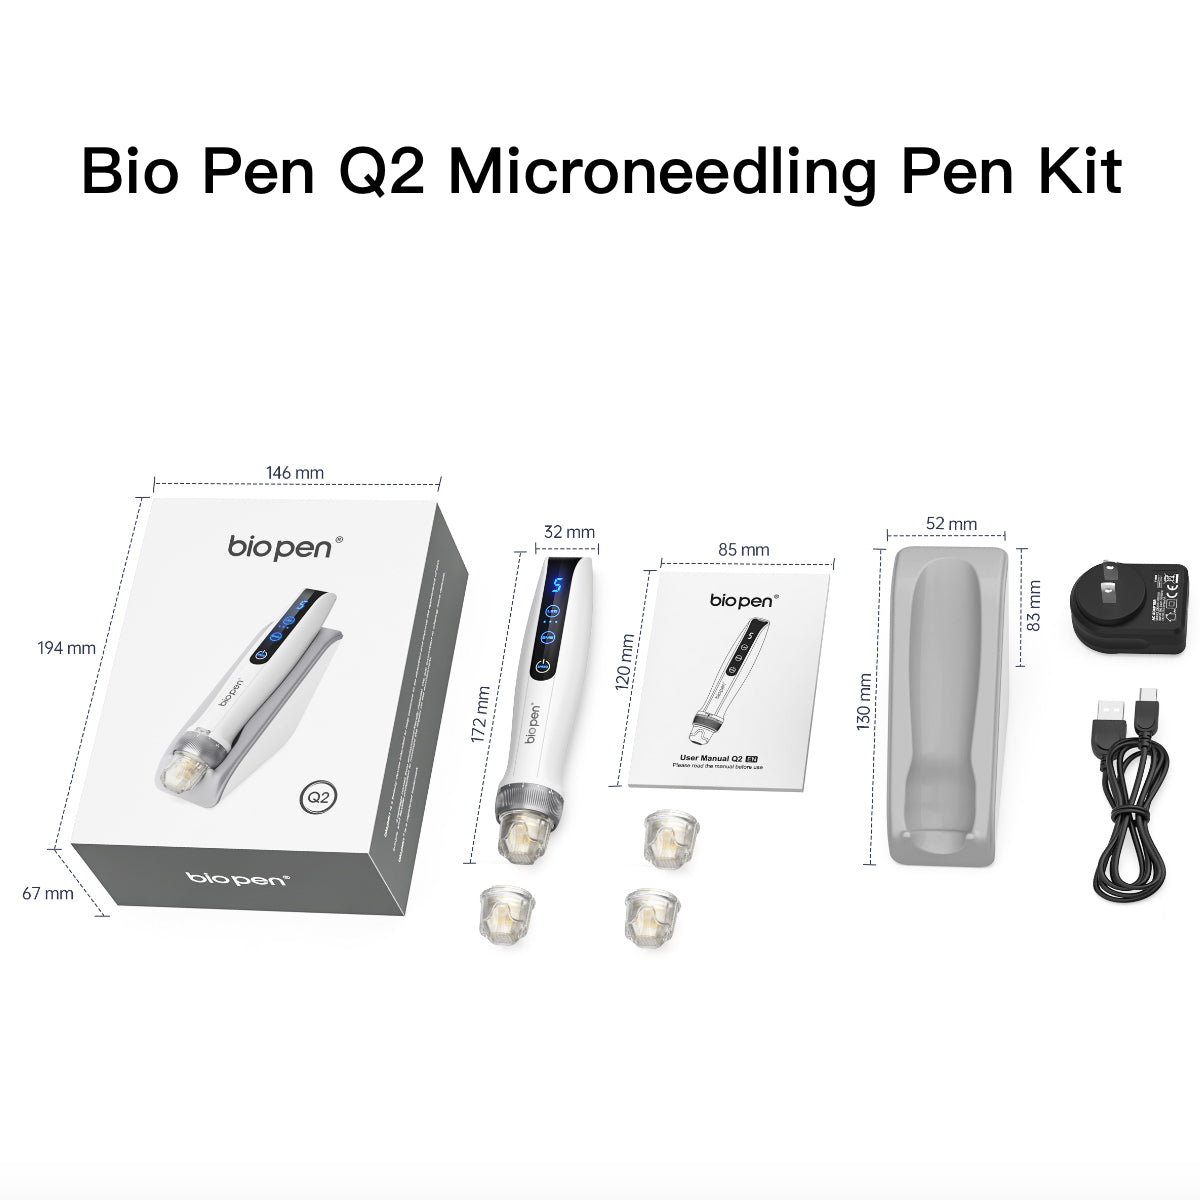 Bio Pen Q2 Microneedling Pen Kit (4 Cartridges)